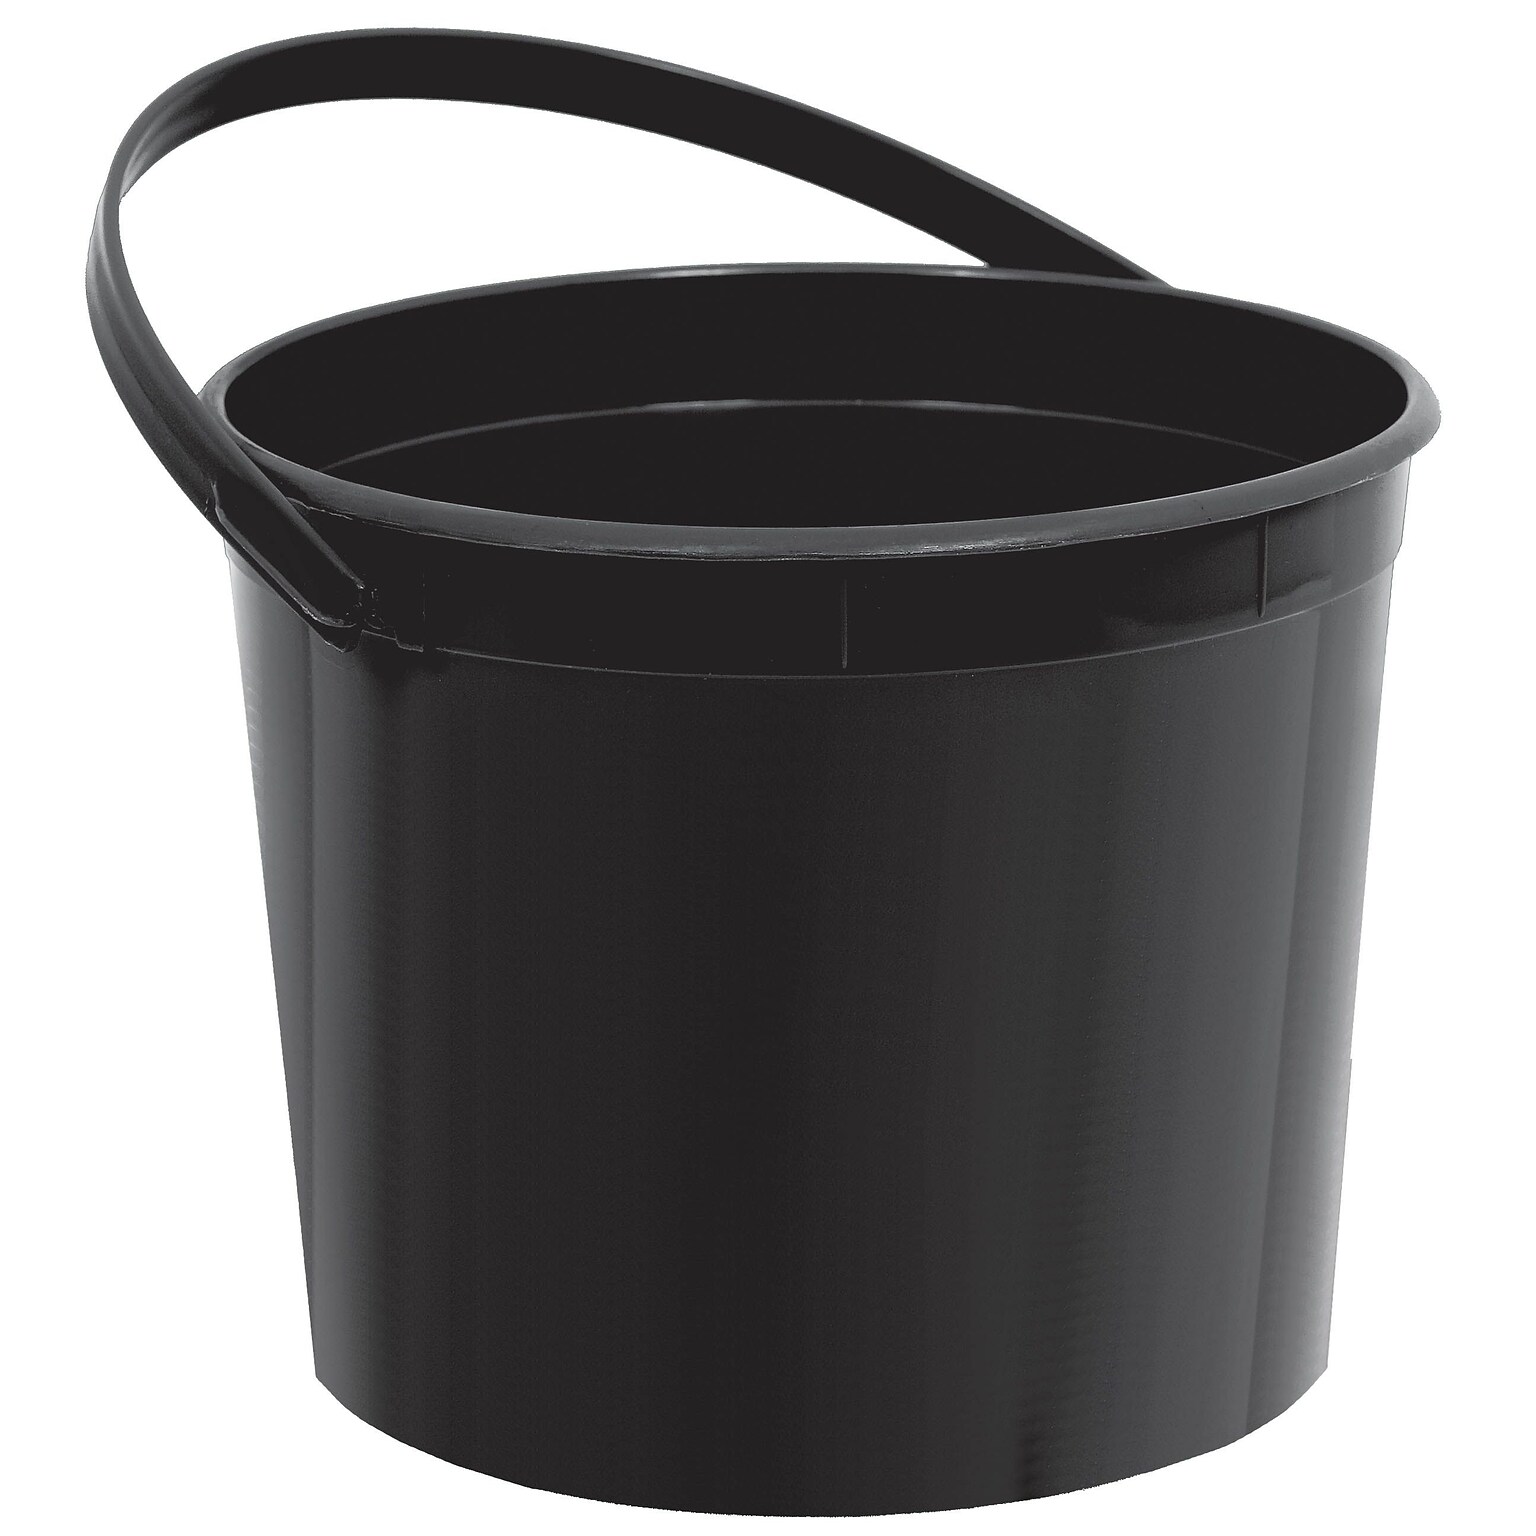 Amscan Plastic Bucket; 6.25, Black, 12/Pack (268902.1)